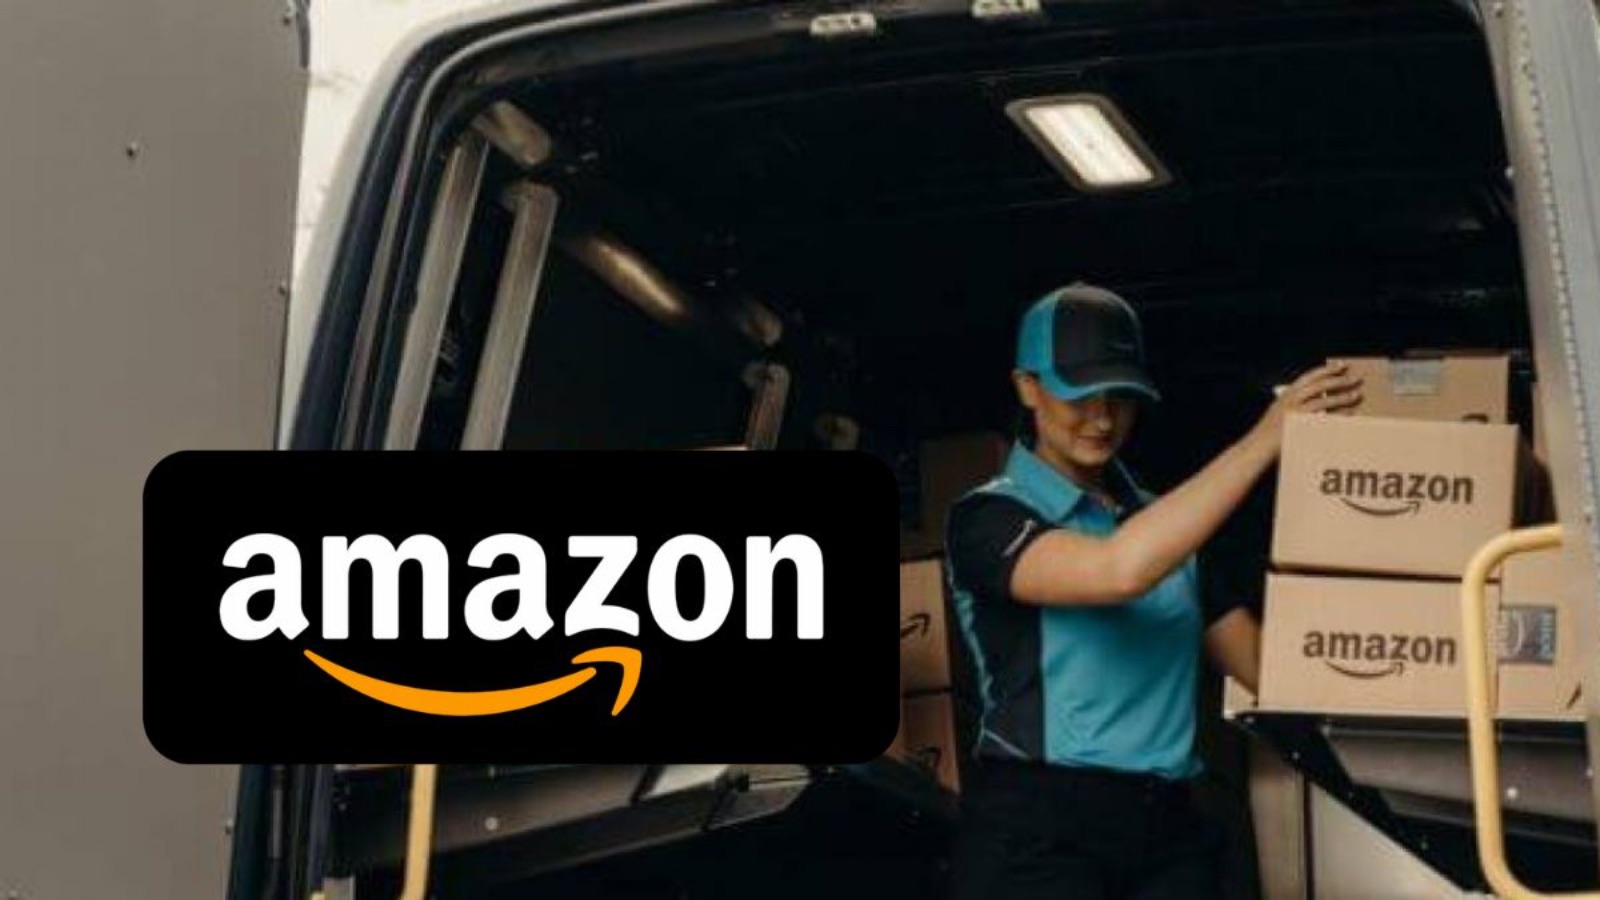 Amazon PAZZA, le 15 offerte Prime Day migliori da 15 a 30 euro